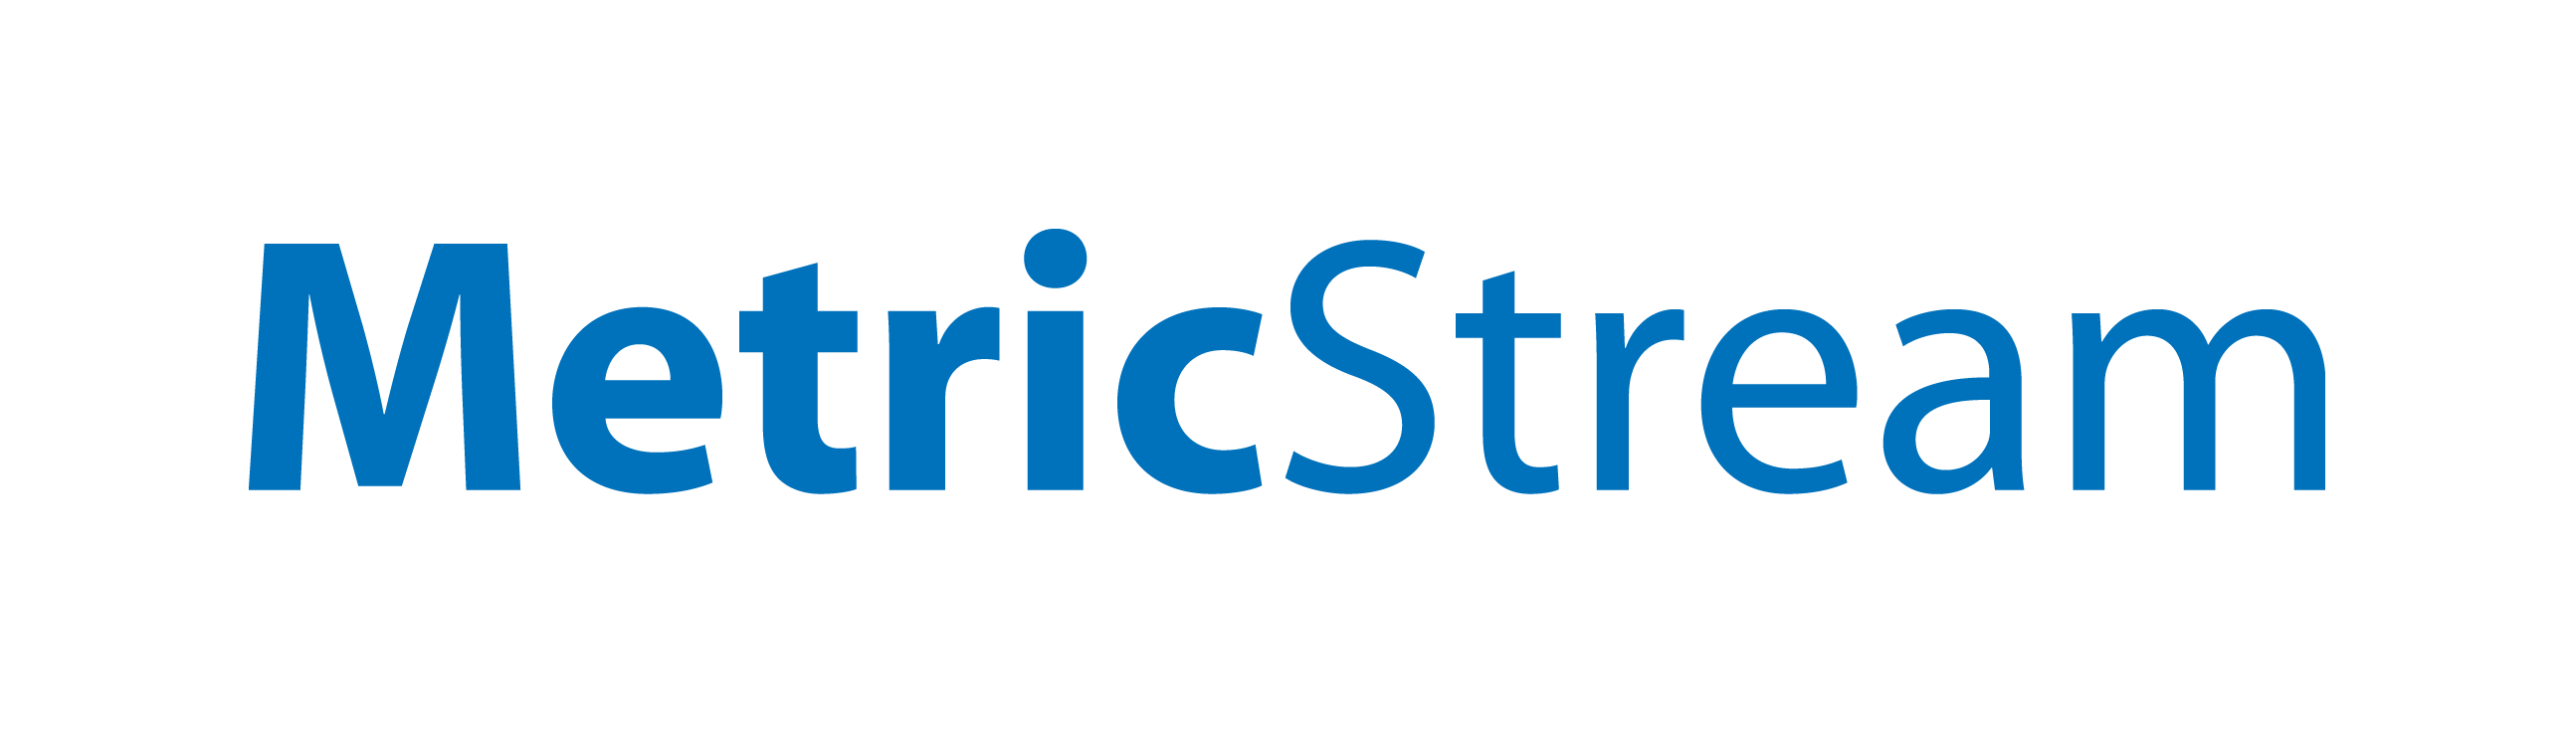 MetricStream, Inc.